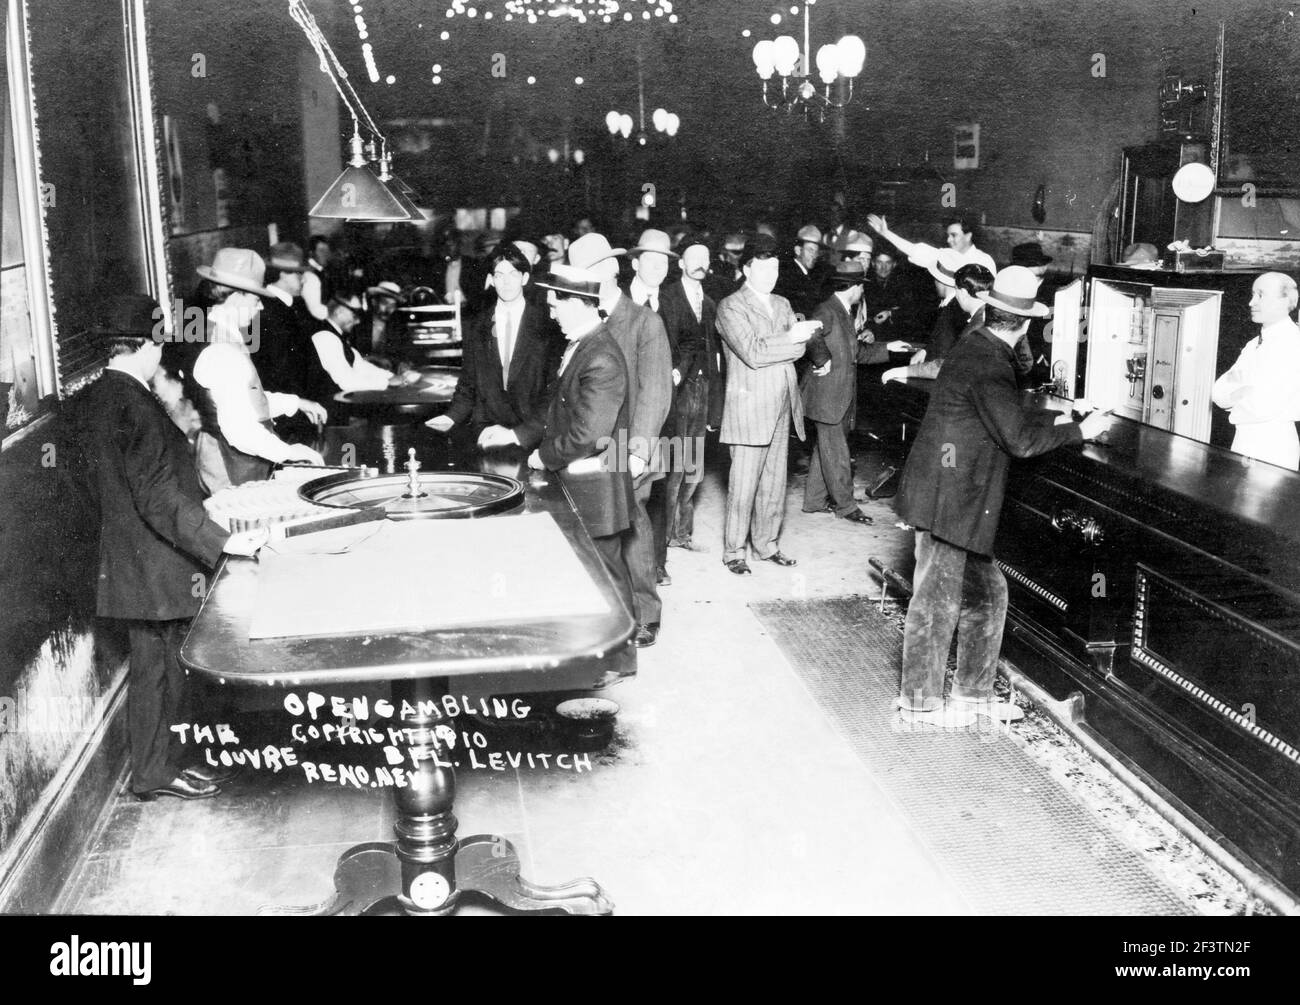 Open Gambling, Louvre, Reno, Nevada - Blick in Glücksspiel Casino, Roulette Tisch und Bar im Vordergrund, 1910 Stockfoto